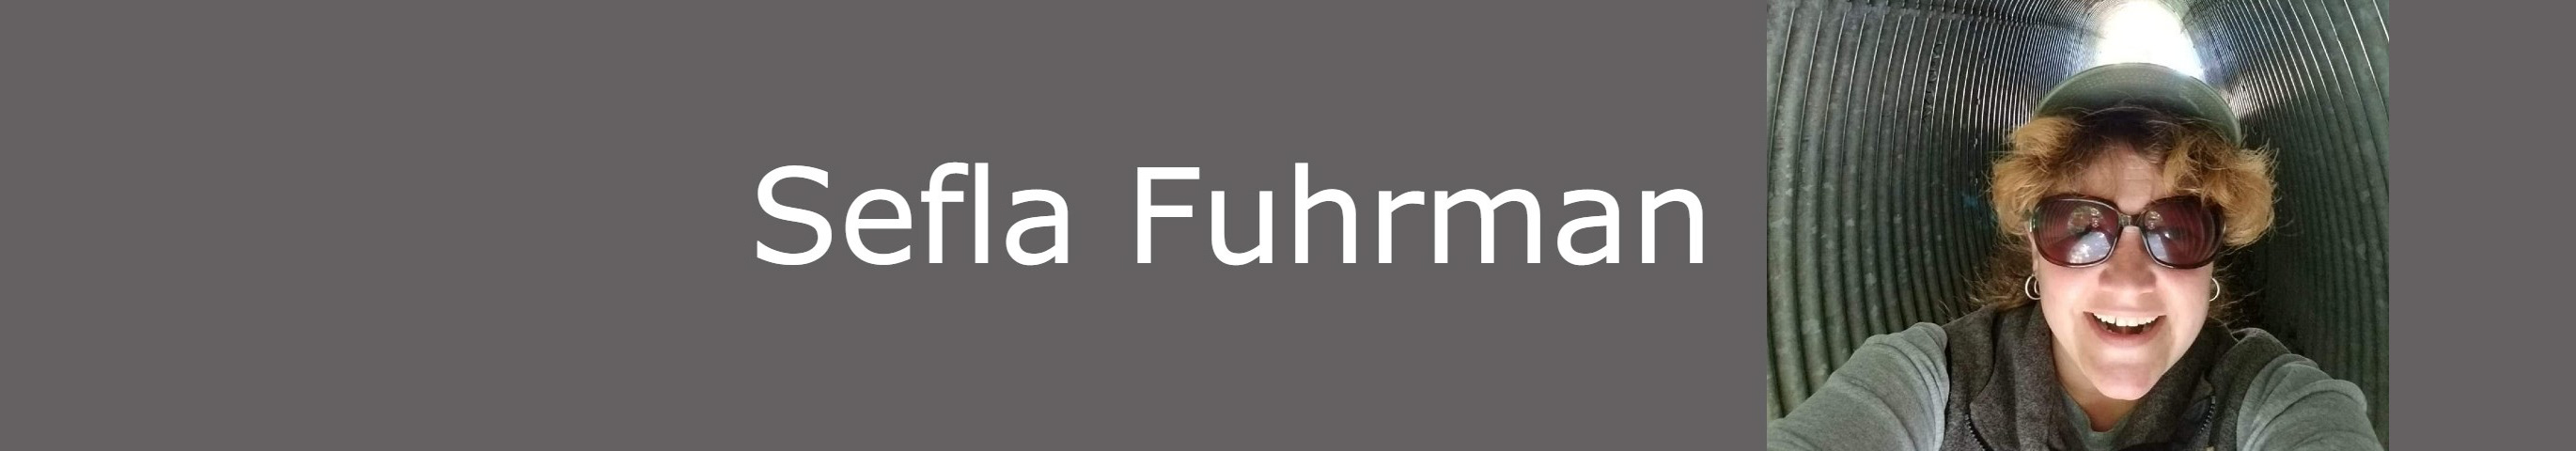 Sefla Fuhrman's profile banner